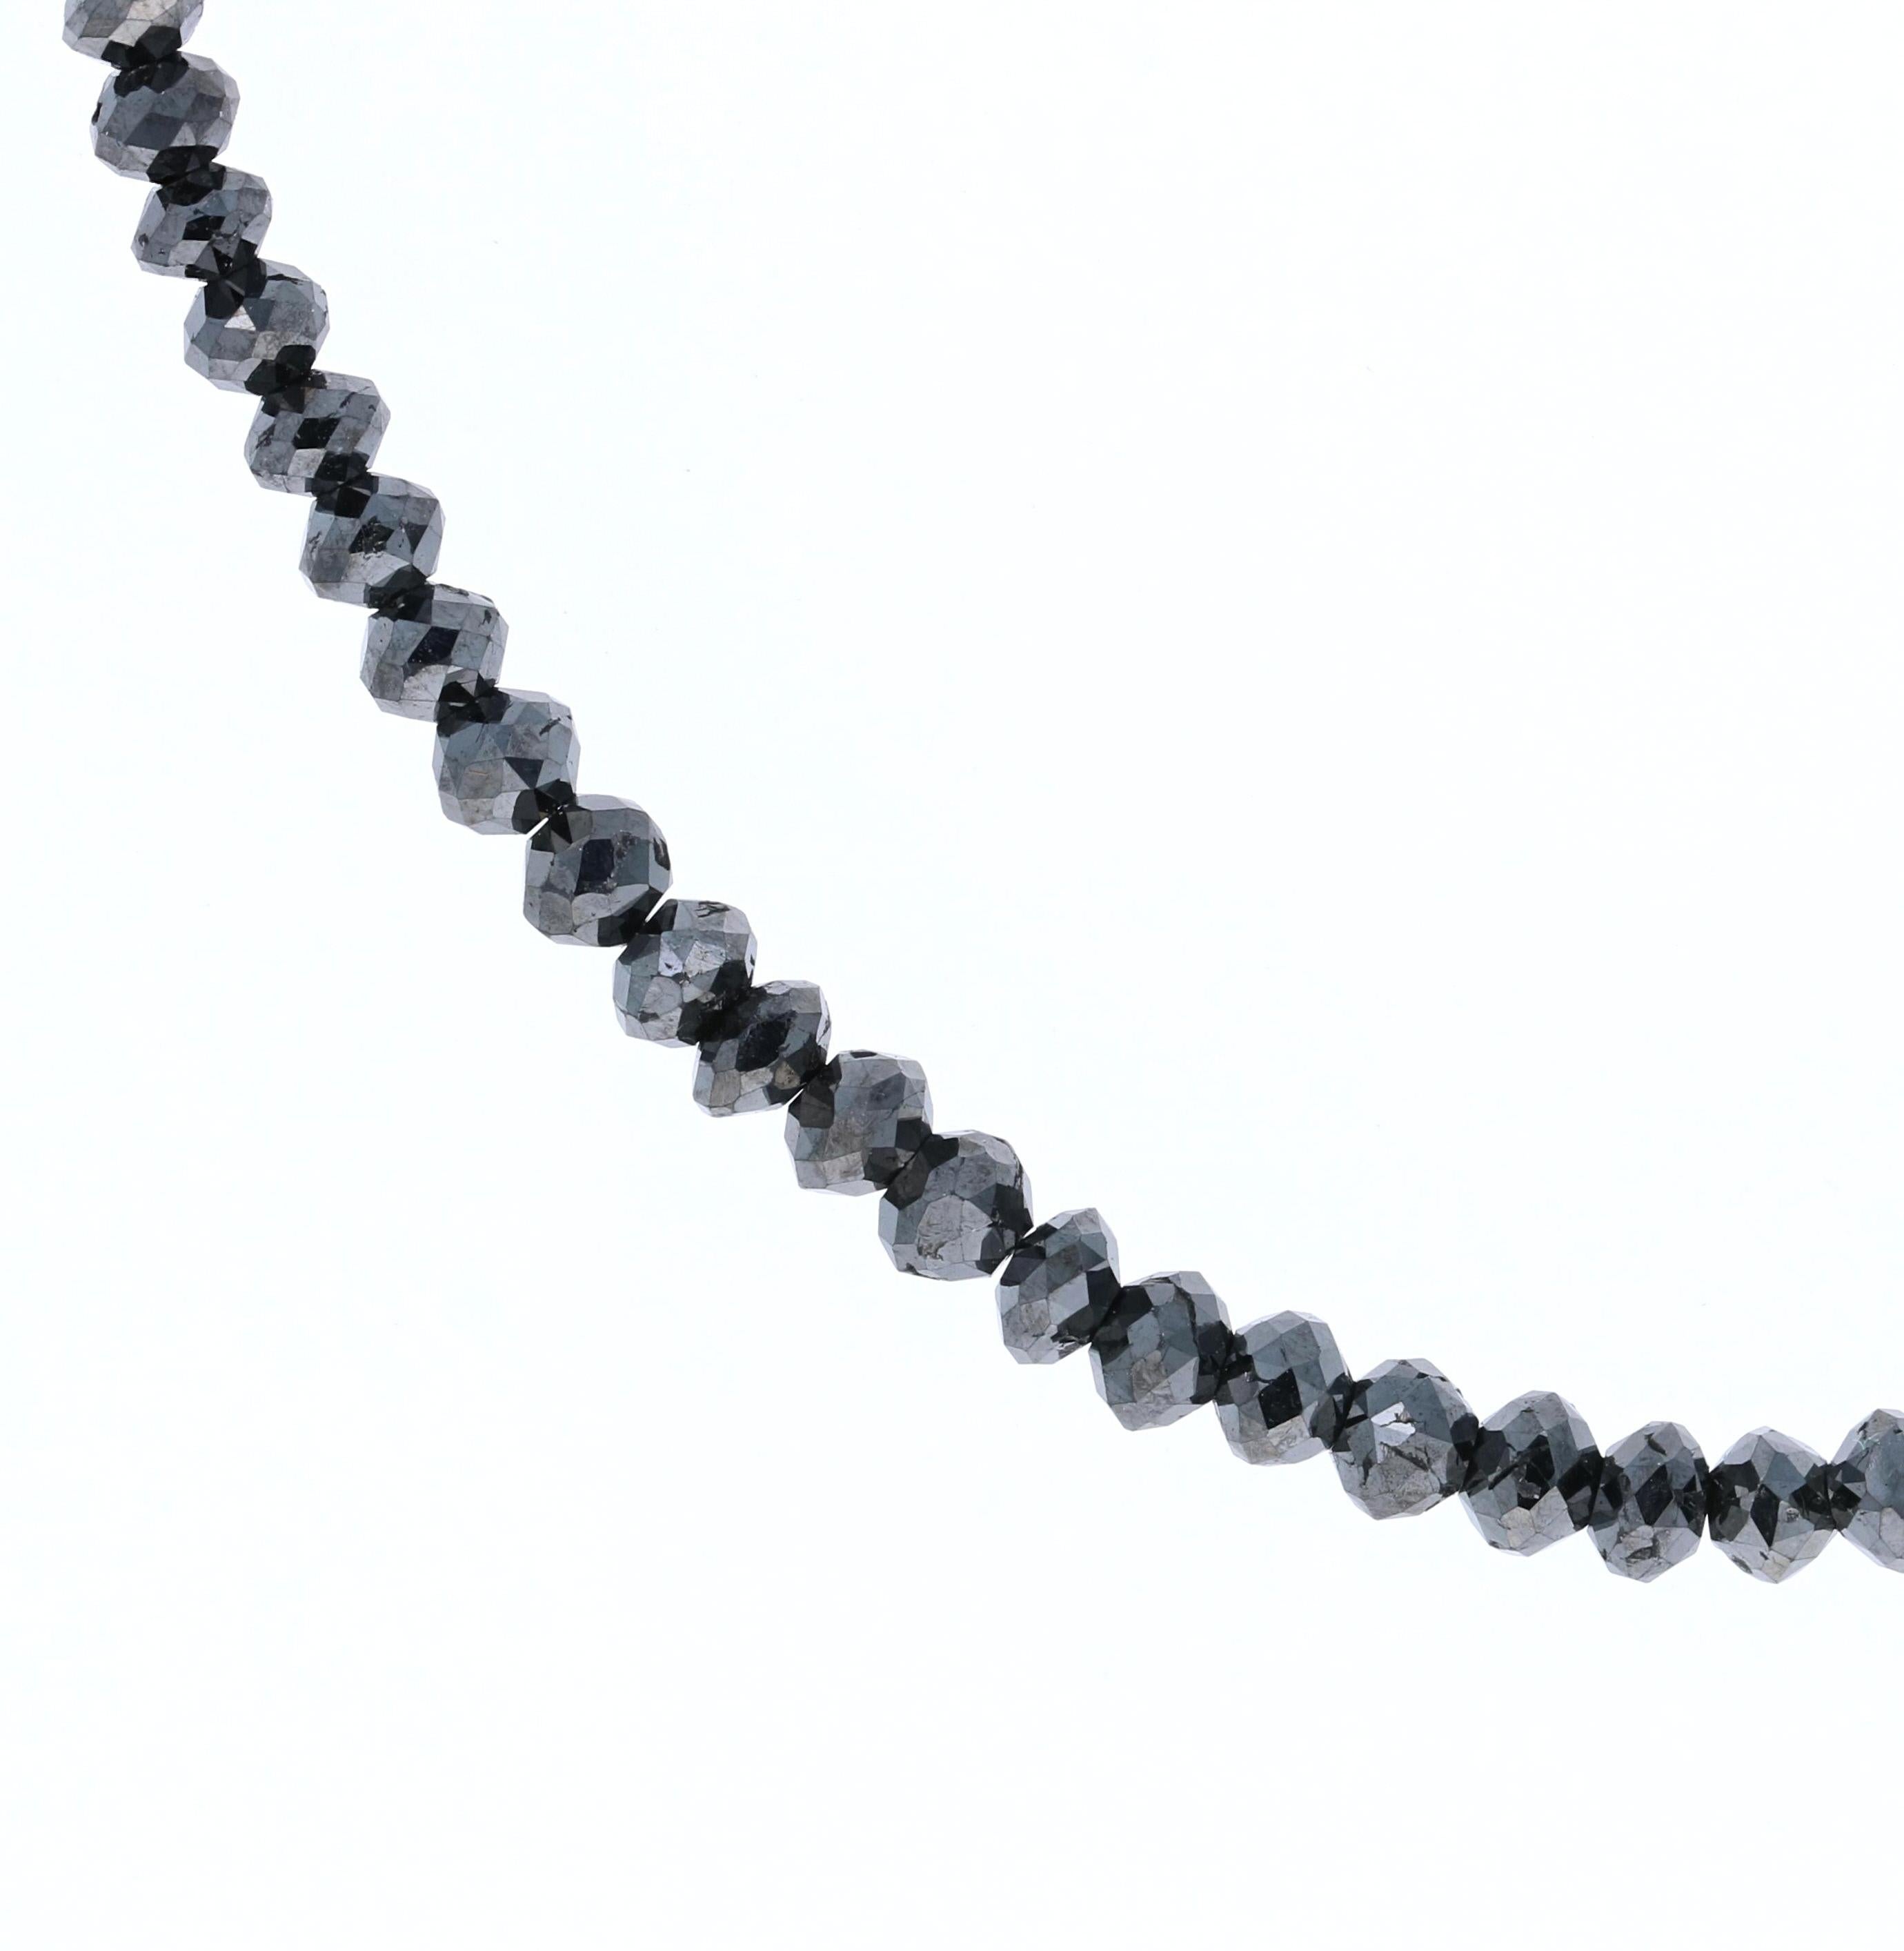 Collier de perles Briolettes en diamant noir de 25,00 carats en or blanc 18 carats.
Ce superbe collier en diamant noir peut rehausser n'importe quel pendentif ou charme et le porter à un niveau supérieur ! 
Il s'agit de diamants naturels qui ont été